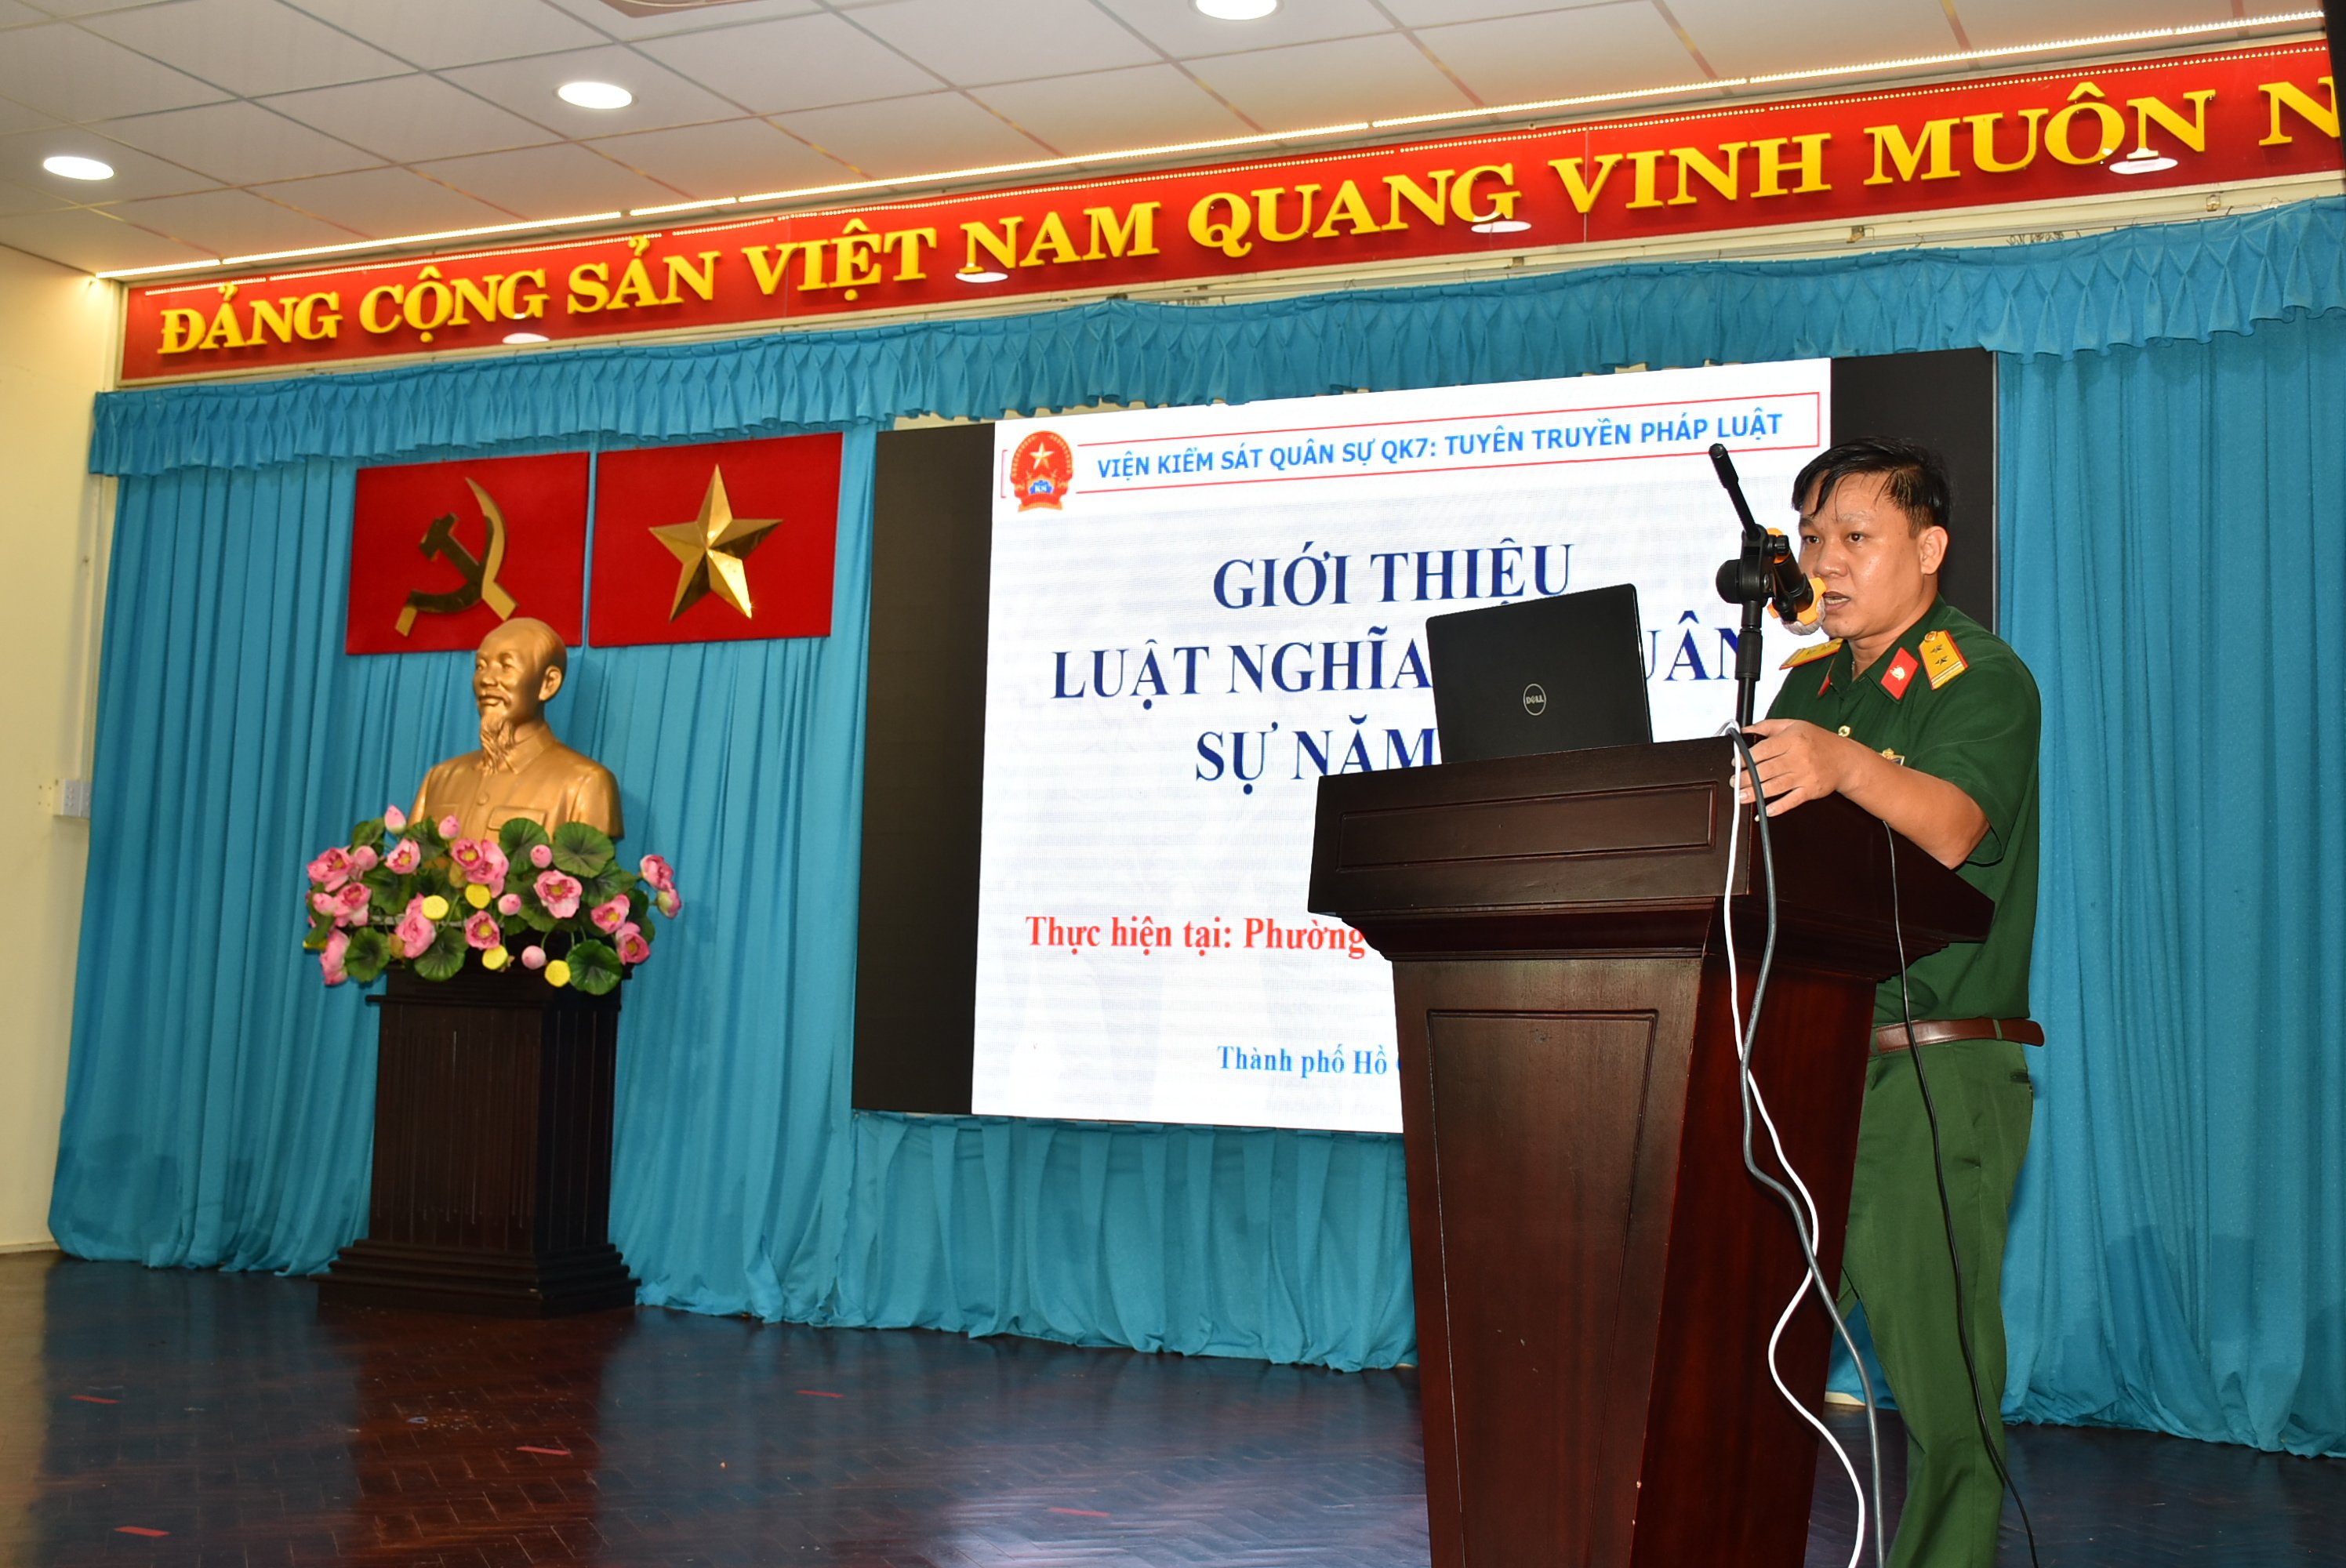 Đồng chí Trung tá Trần Kiến Quốc – Trưởng ban thi hành án, Viện kiểm soát Quân sự Quân khu 7